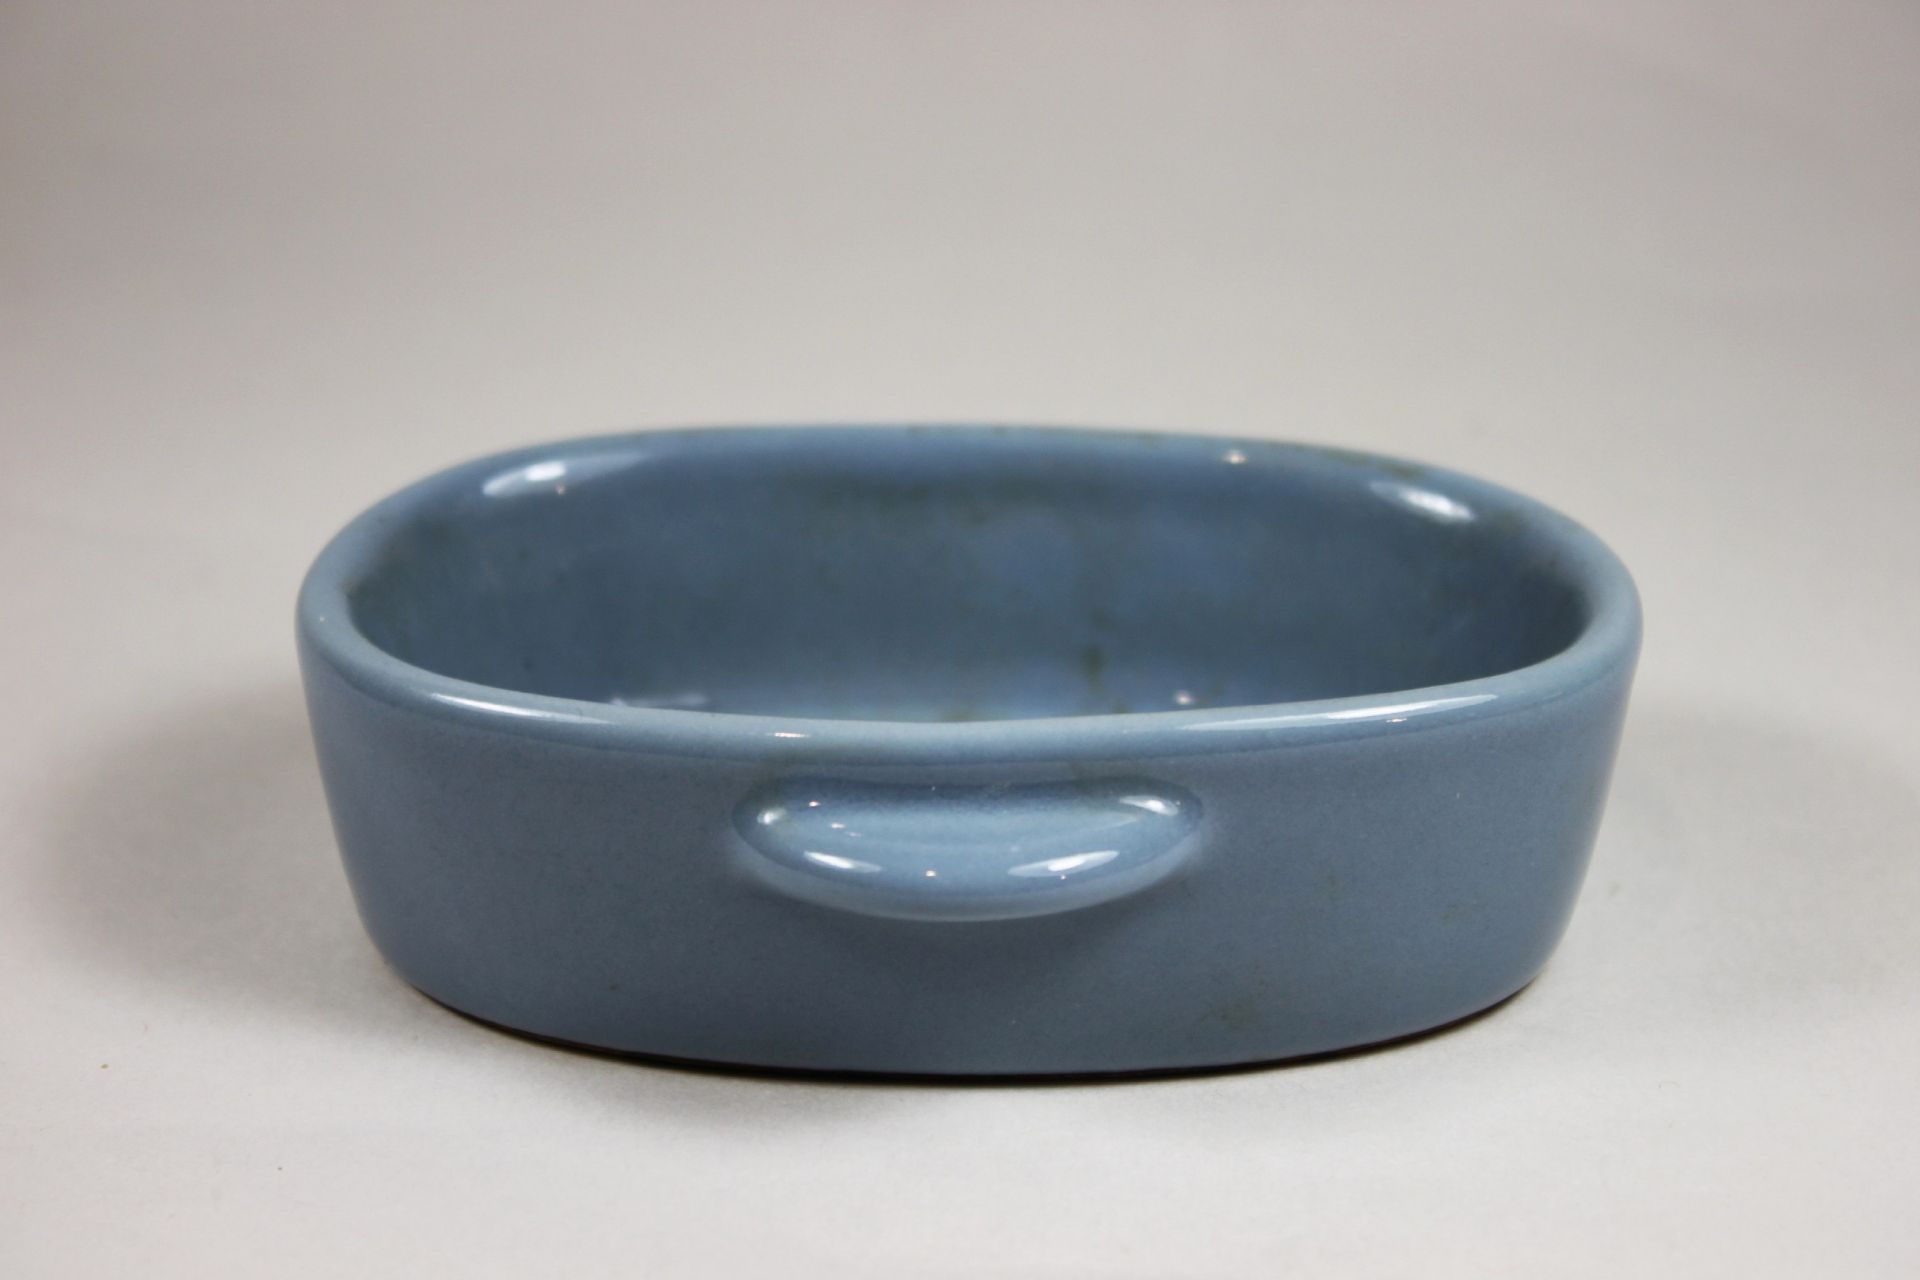 Pinselwascher, China, Porzellan, Blau glasiert, blauer Stempel unterseitig. Maße: 11 x 3,5 x 9 cm. - Image 2 of 3